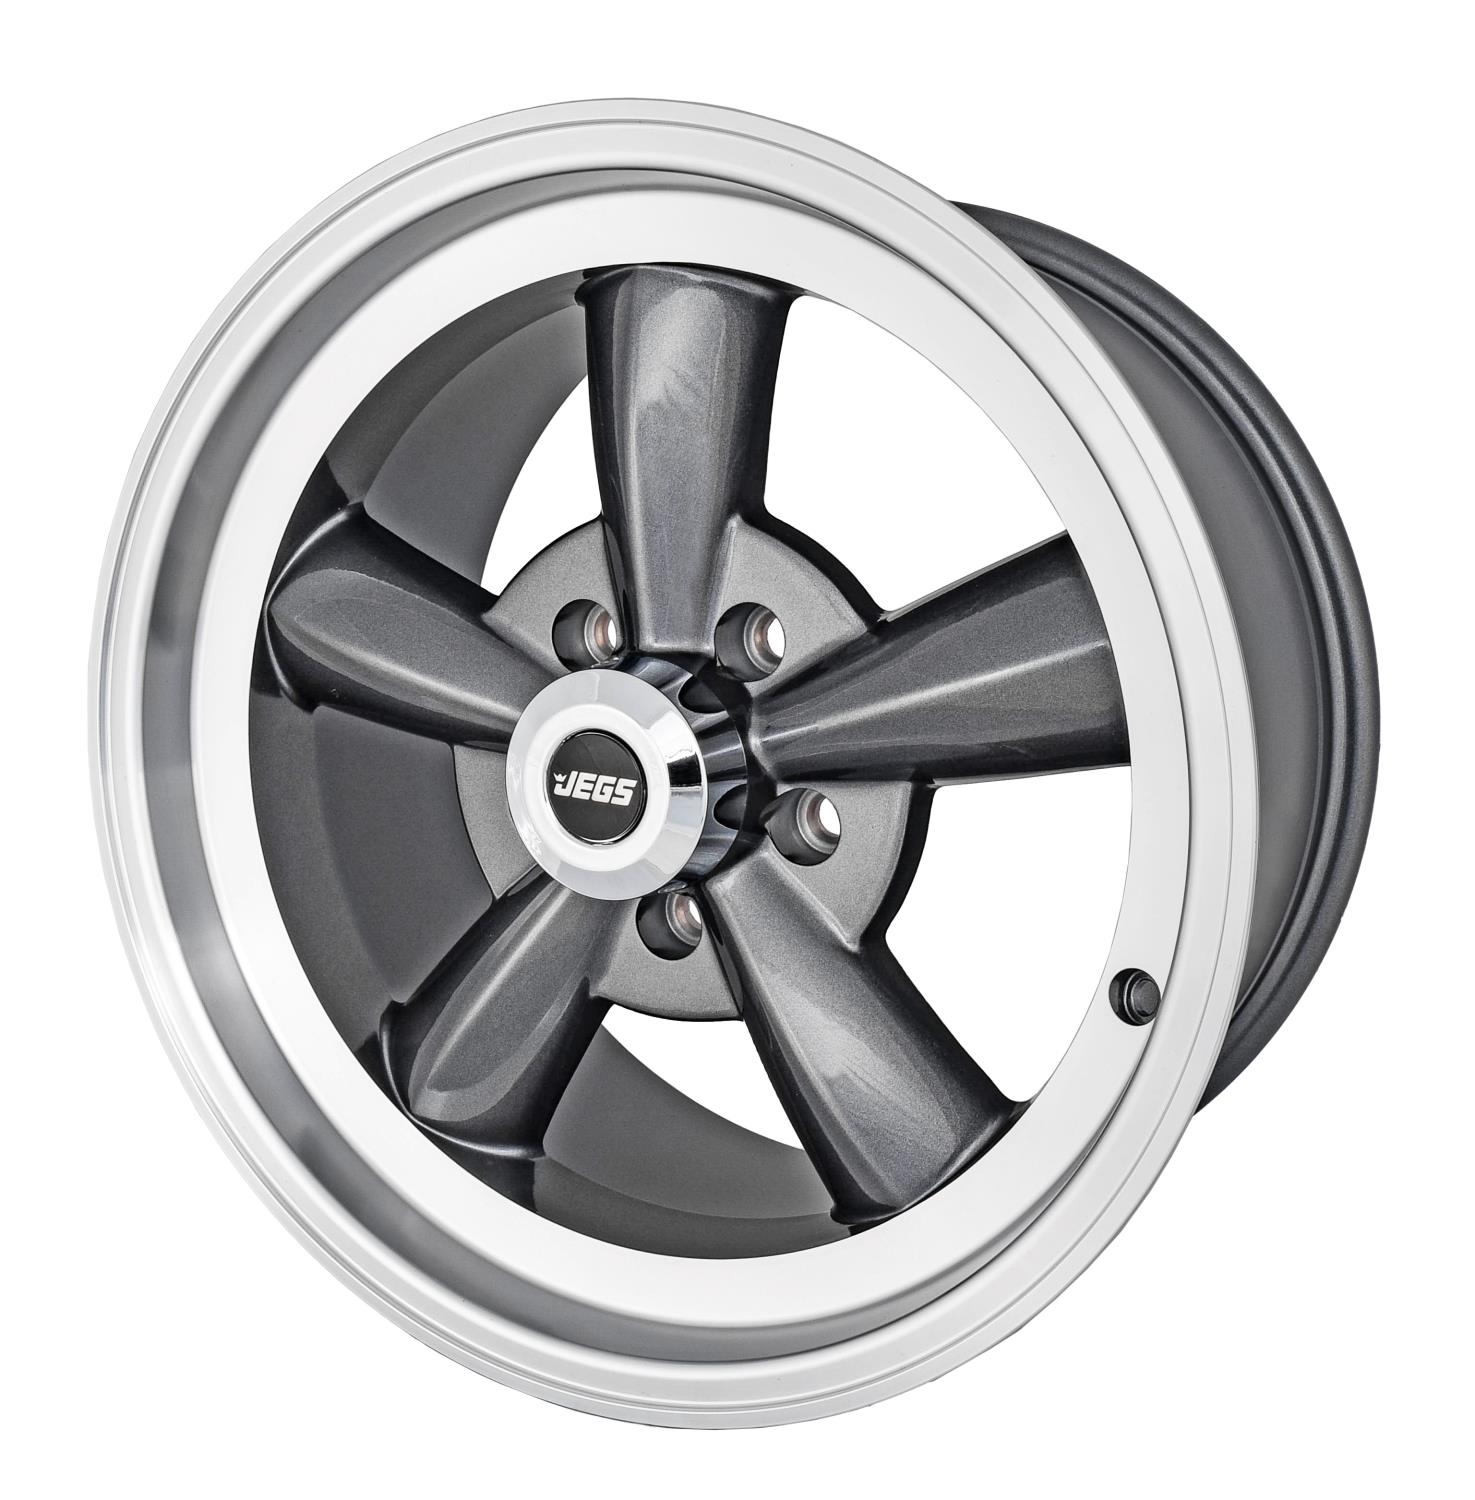 Sport Torque Wheel [Size: 17" x 8"] Polished Lip with Grey Spokes